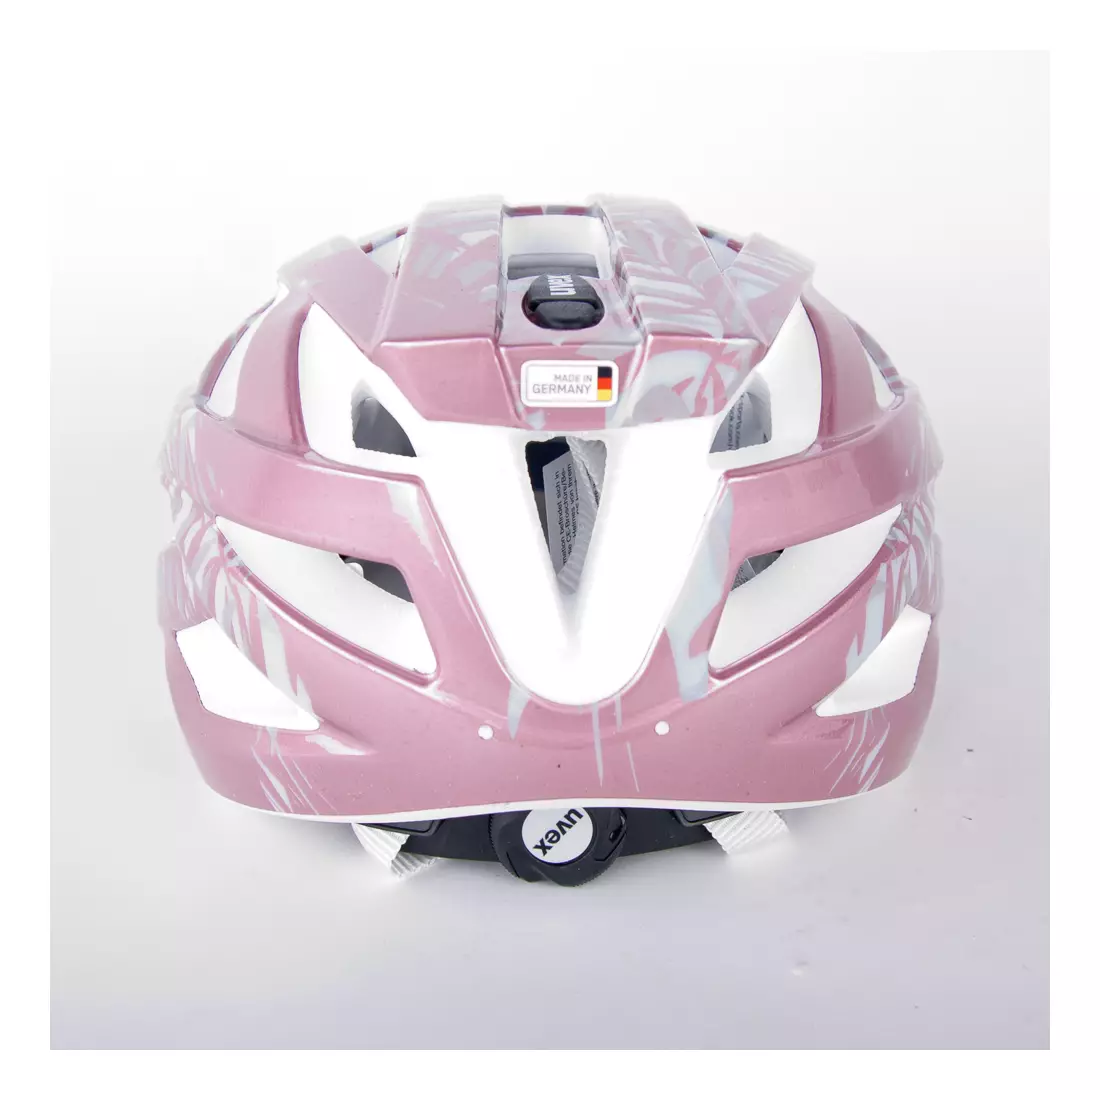 Cască de bicicletă UVEX Air Wing, roz